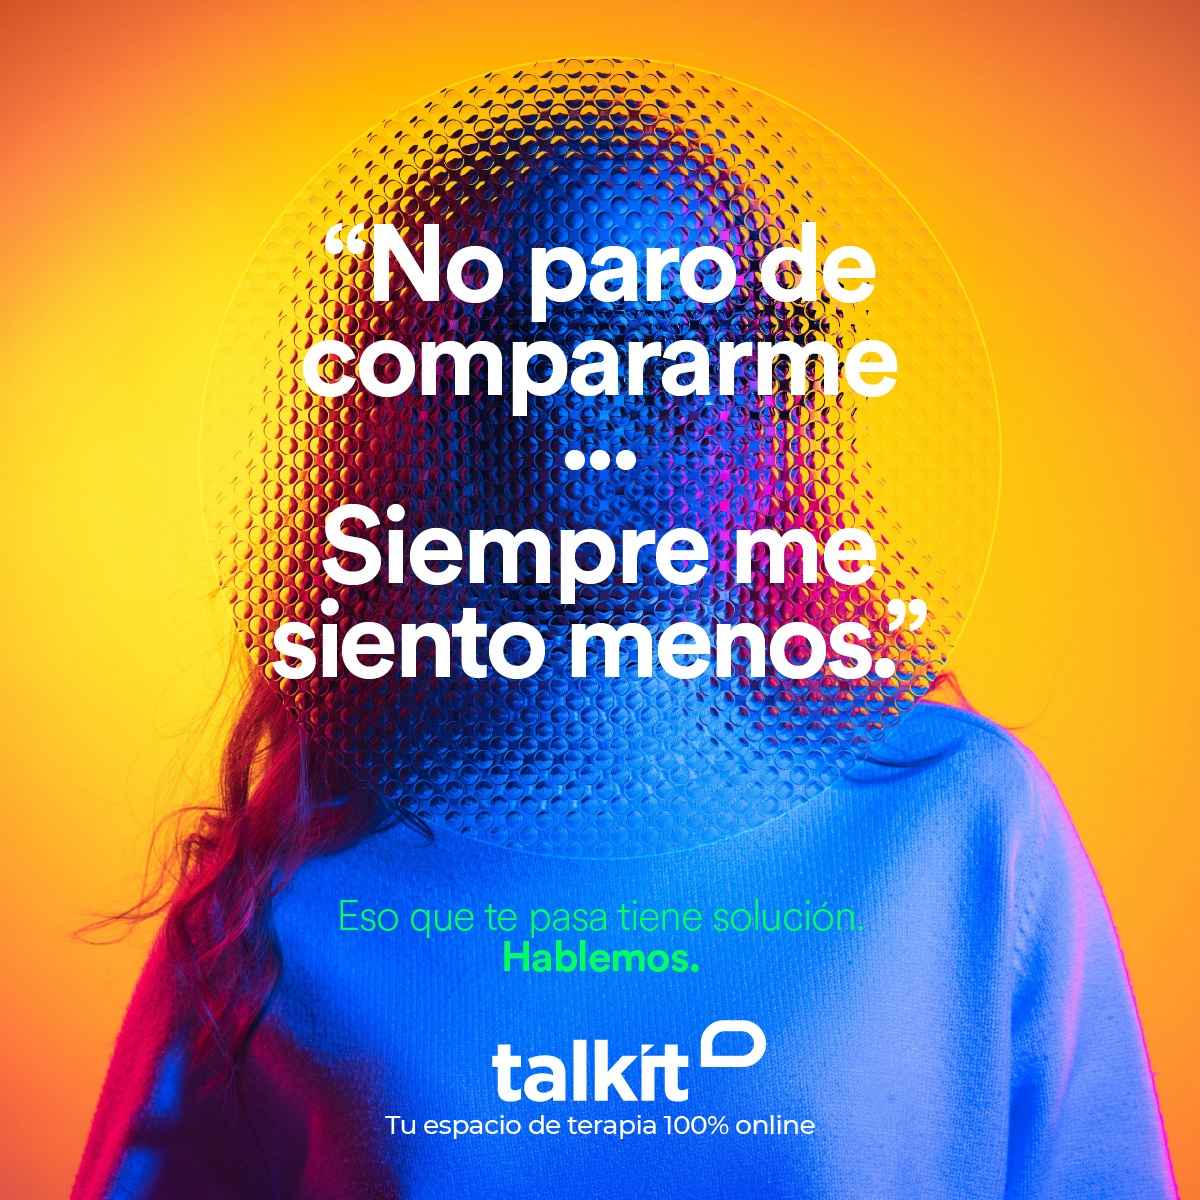 Portada de Estreno: Merci presenta el lanzamiento de Talkit 